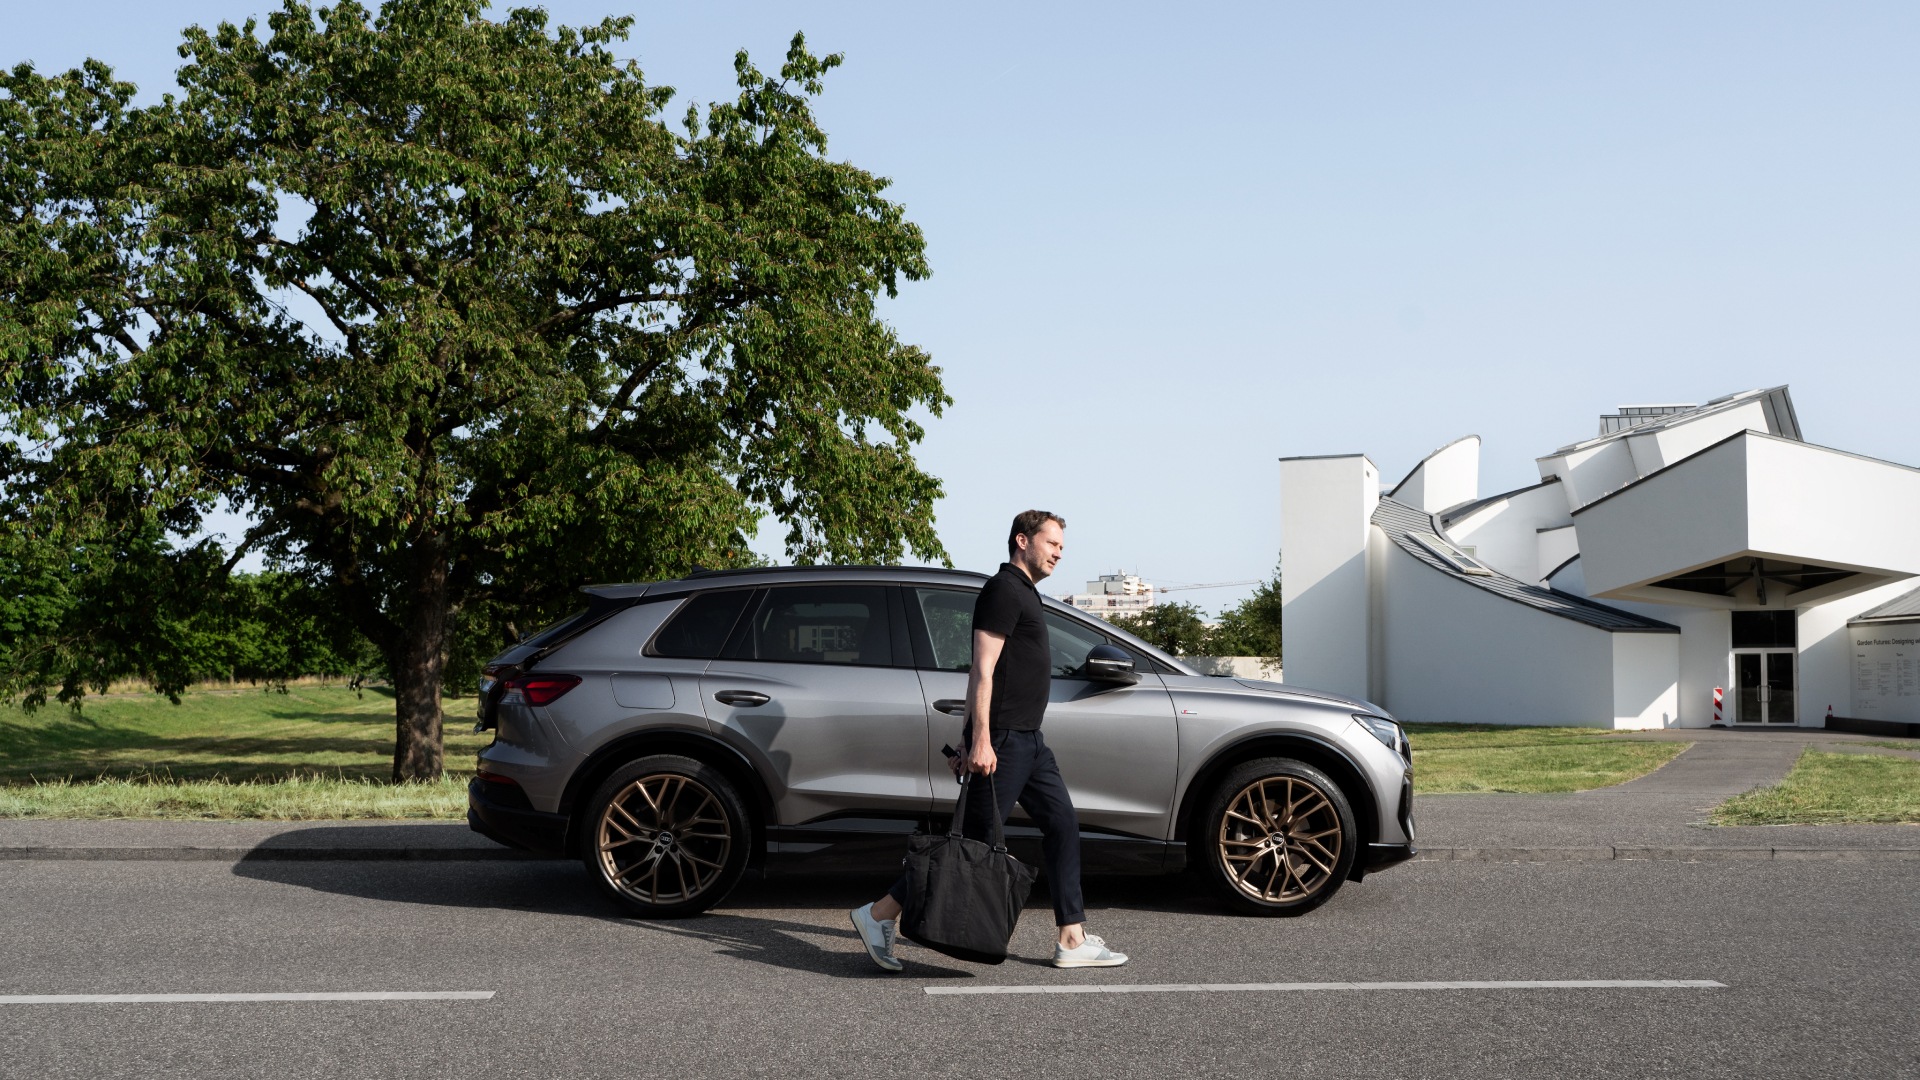 Mateo Kries en de Audi Q4 e-tron voor het Vitra Design Museum.